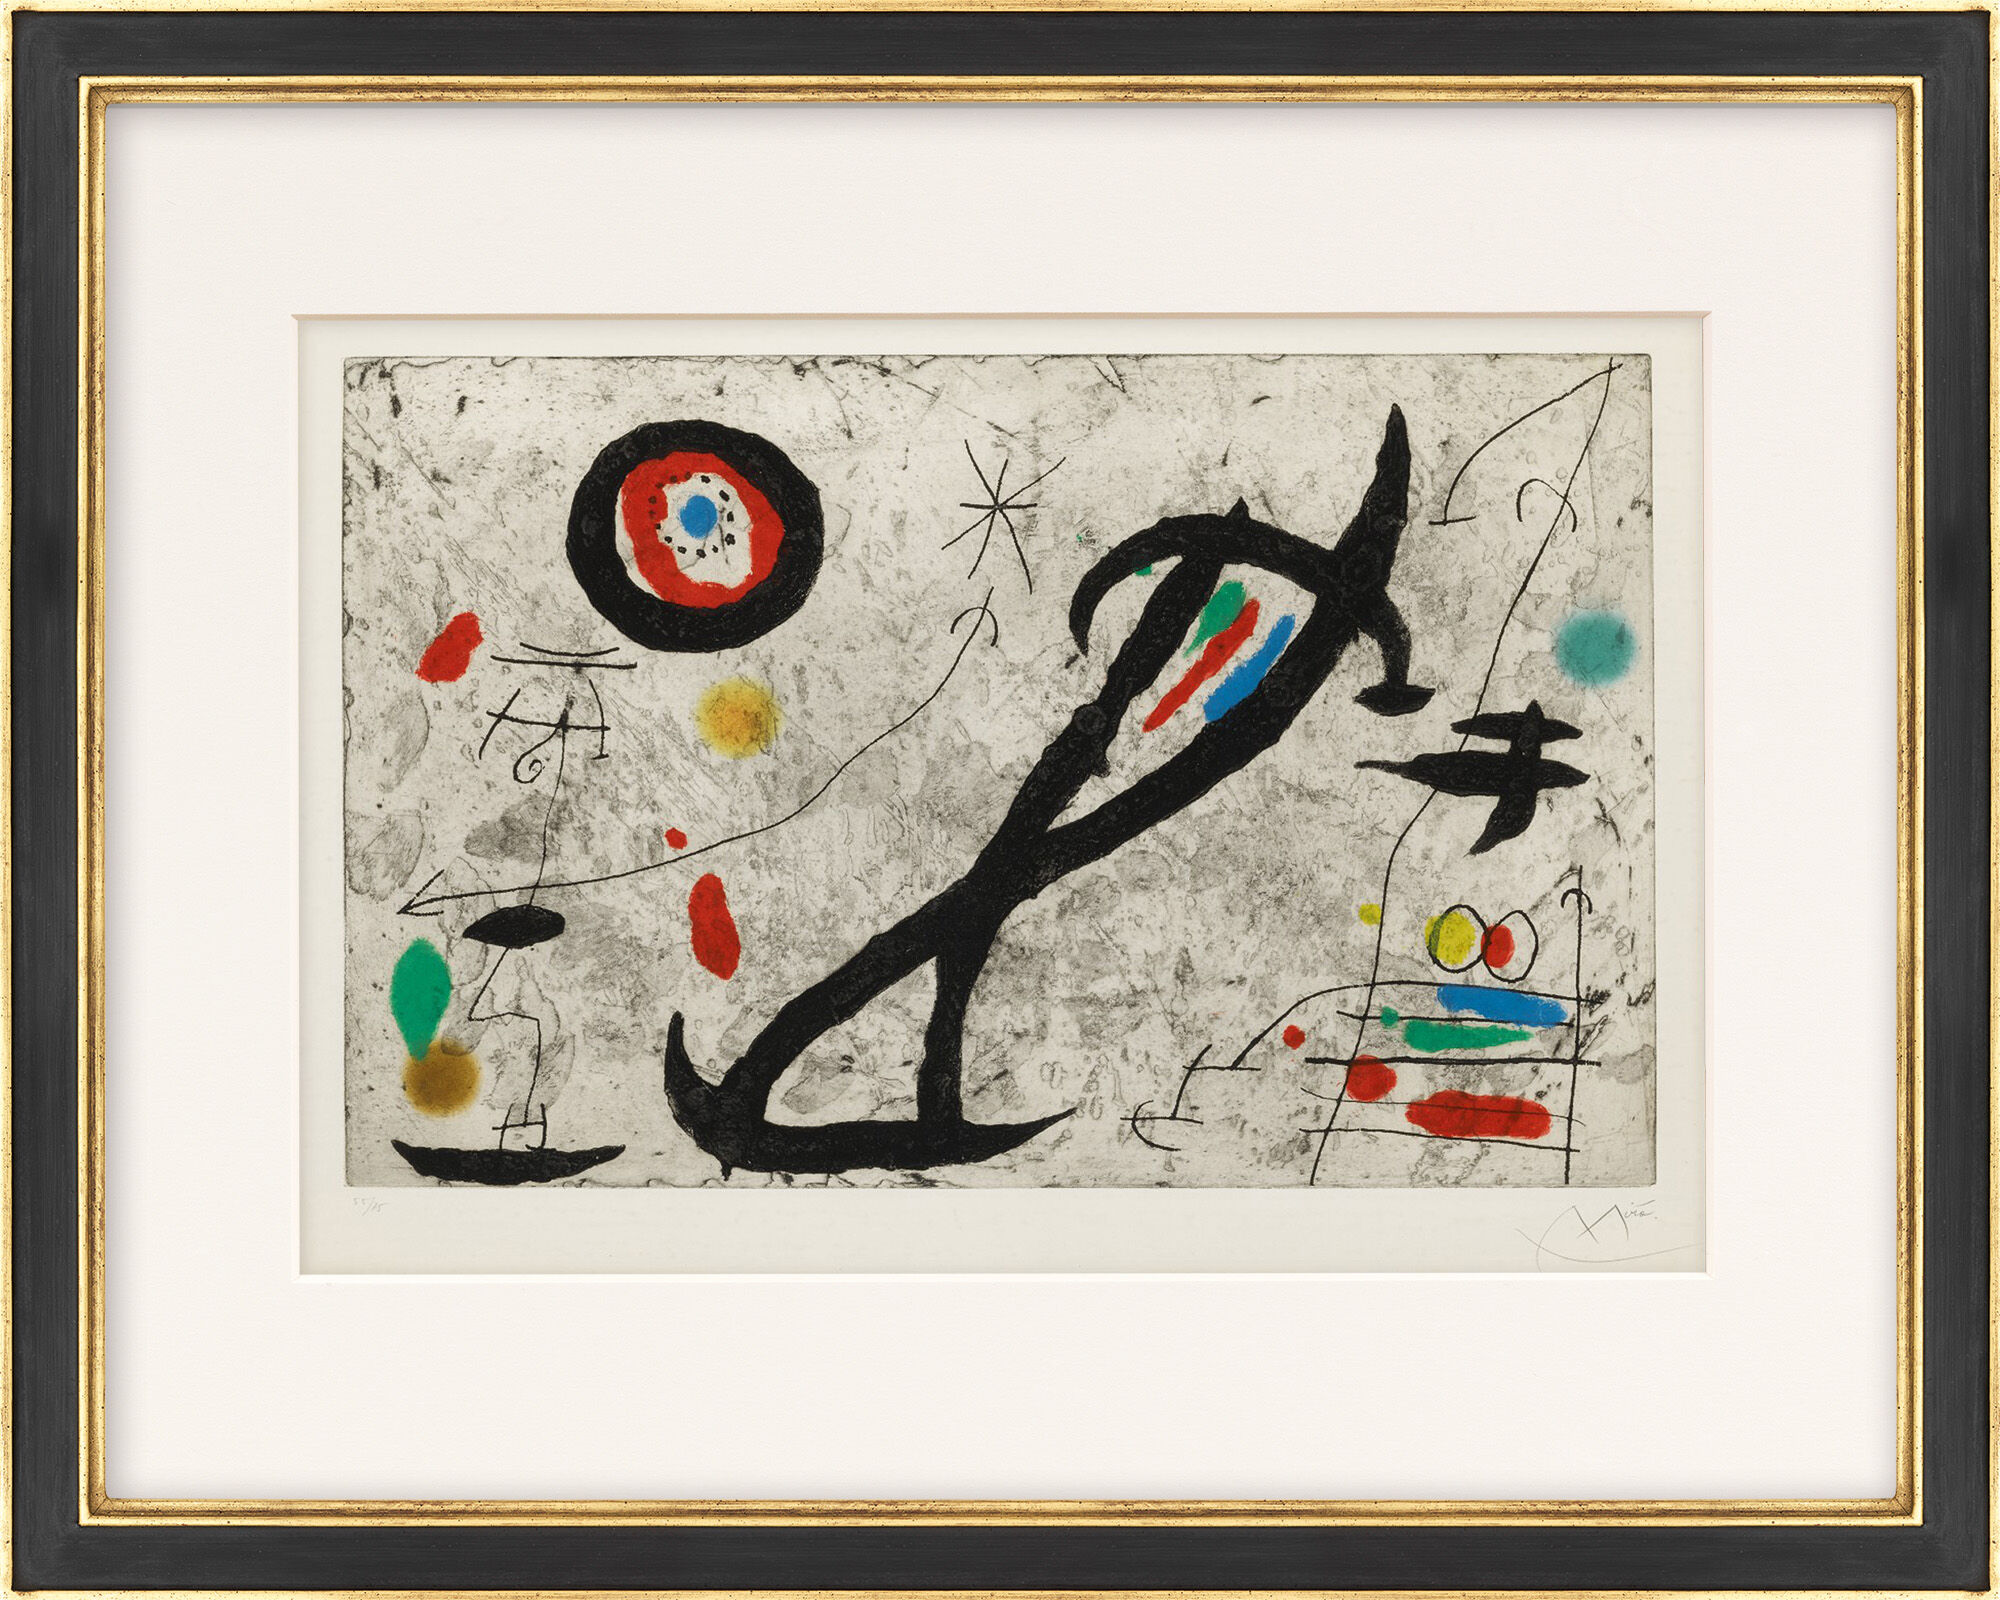 Tableau "Tracé sur la paroi V" (1967) von Joan Miró